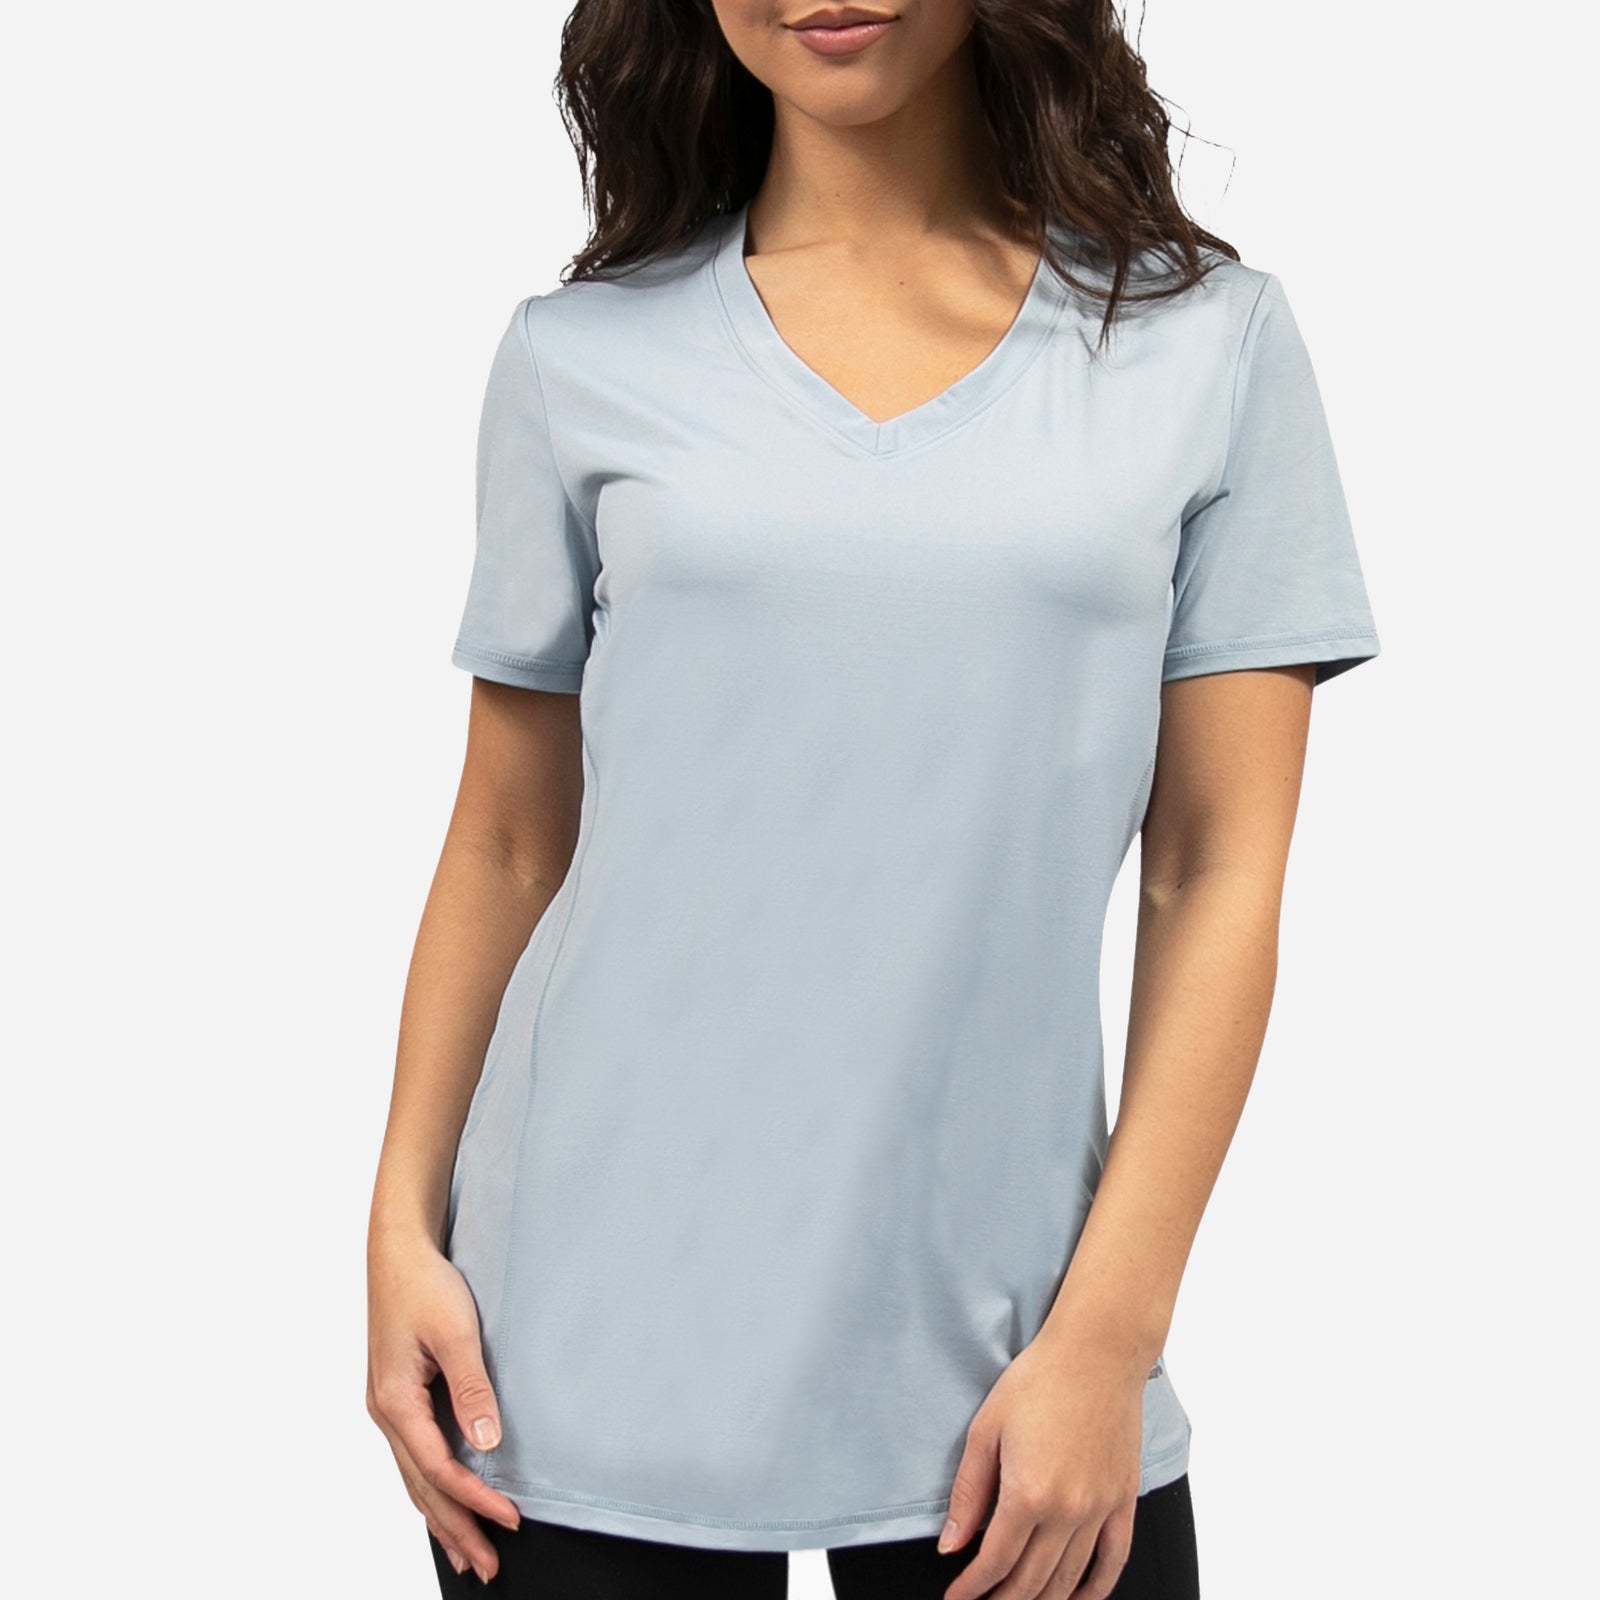 Women's V-Neck Compression Shirt, Comfy